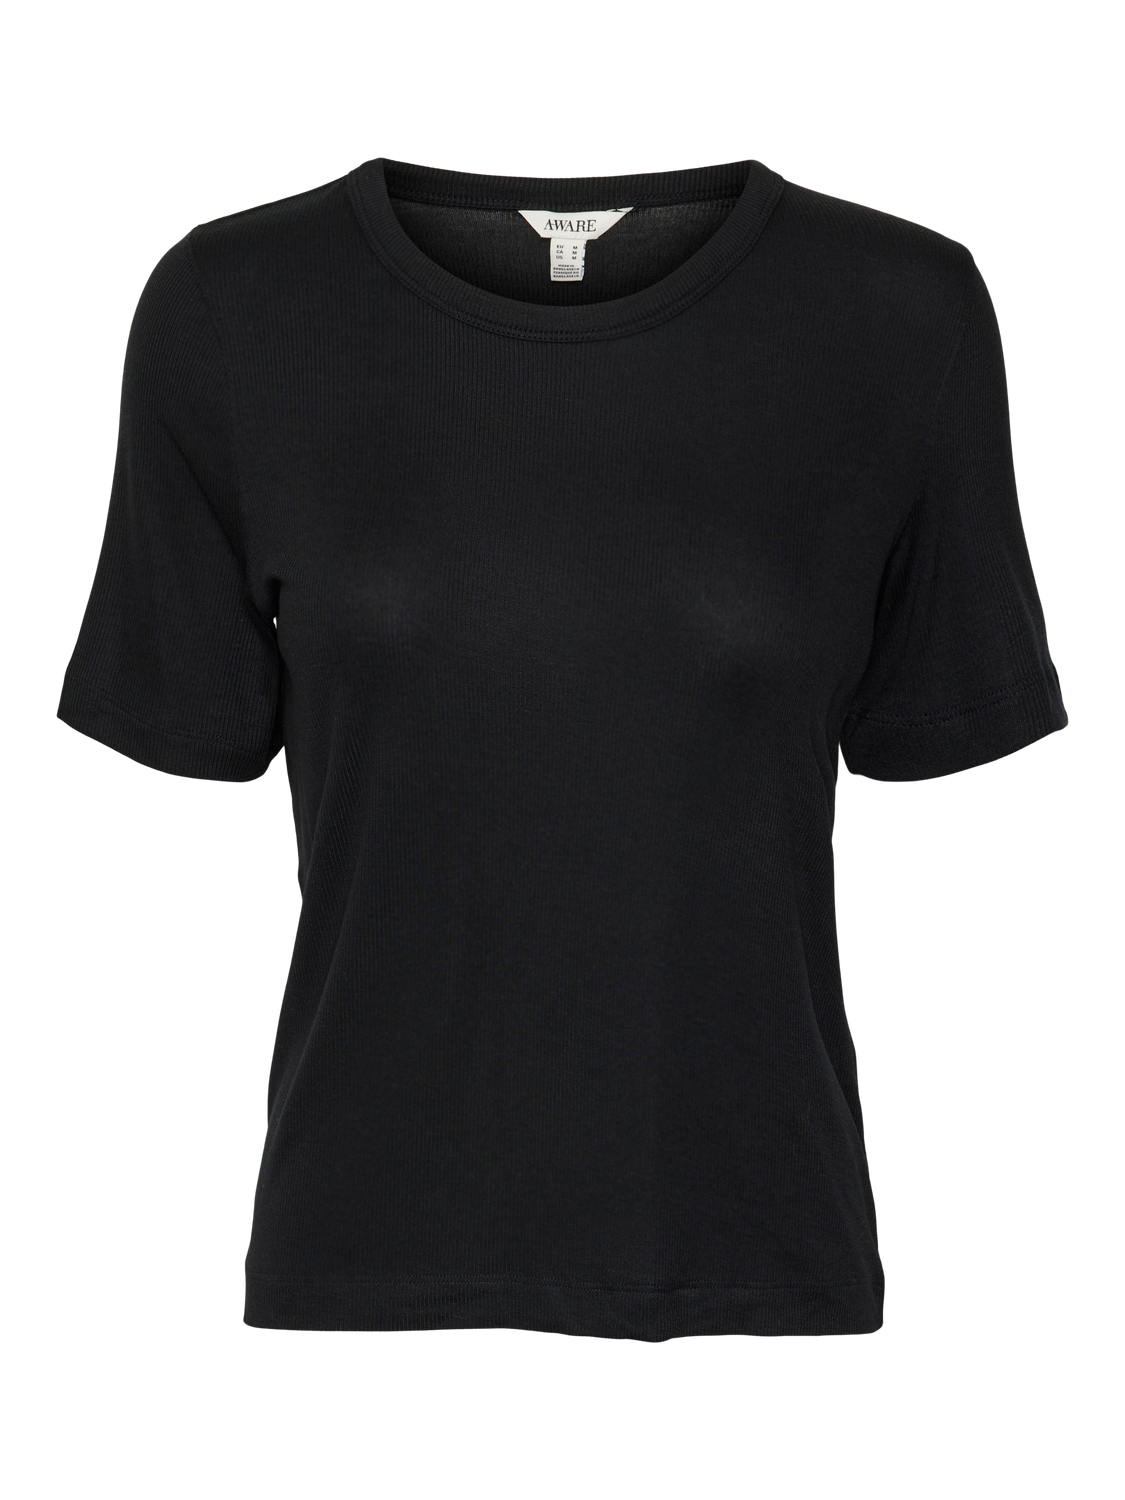 Irwina o-neck t-shirt black